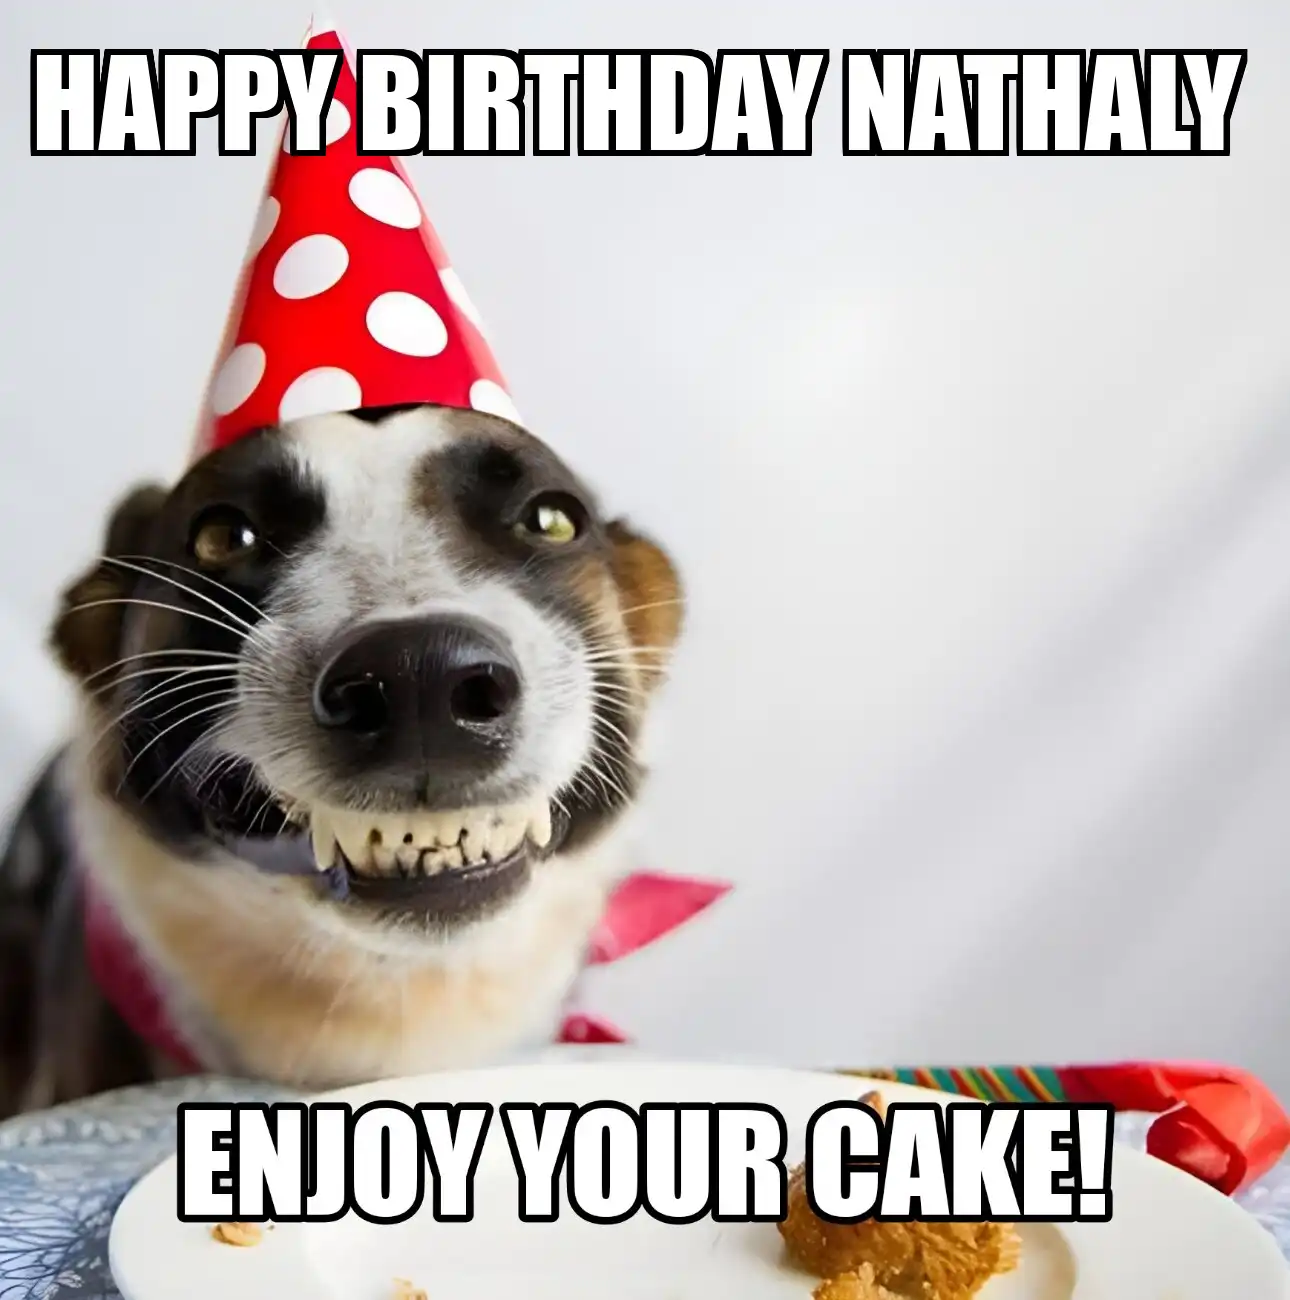 Happy Birthday Nathaly Enjoy Your Cake Dog Meme